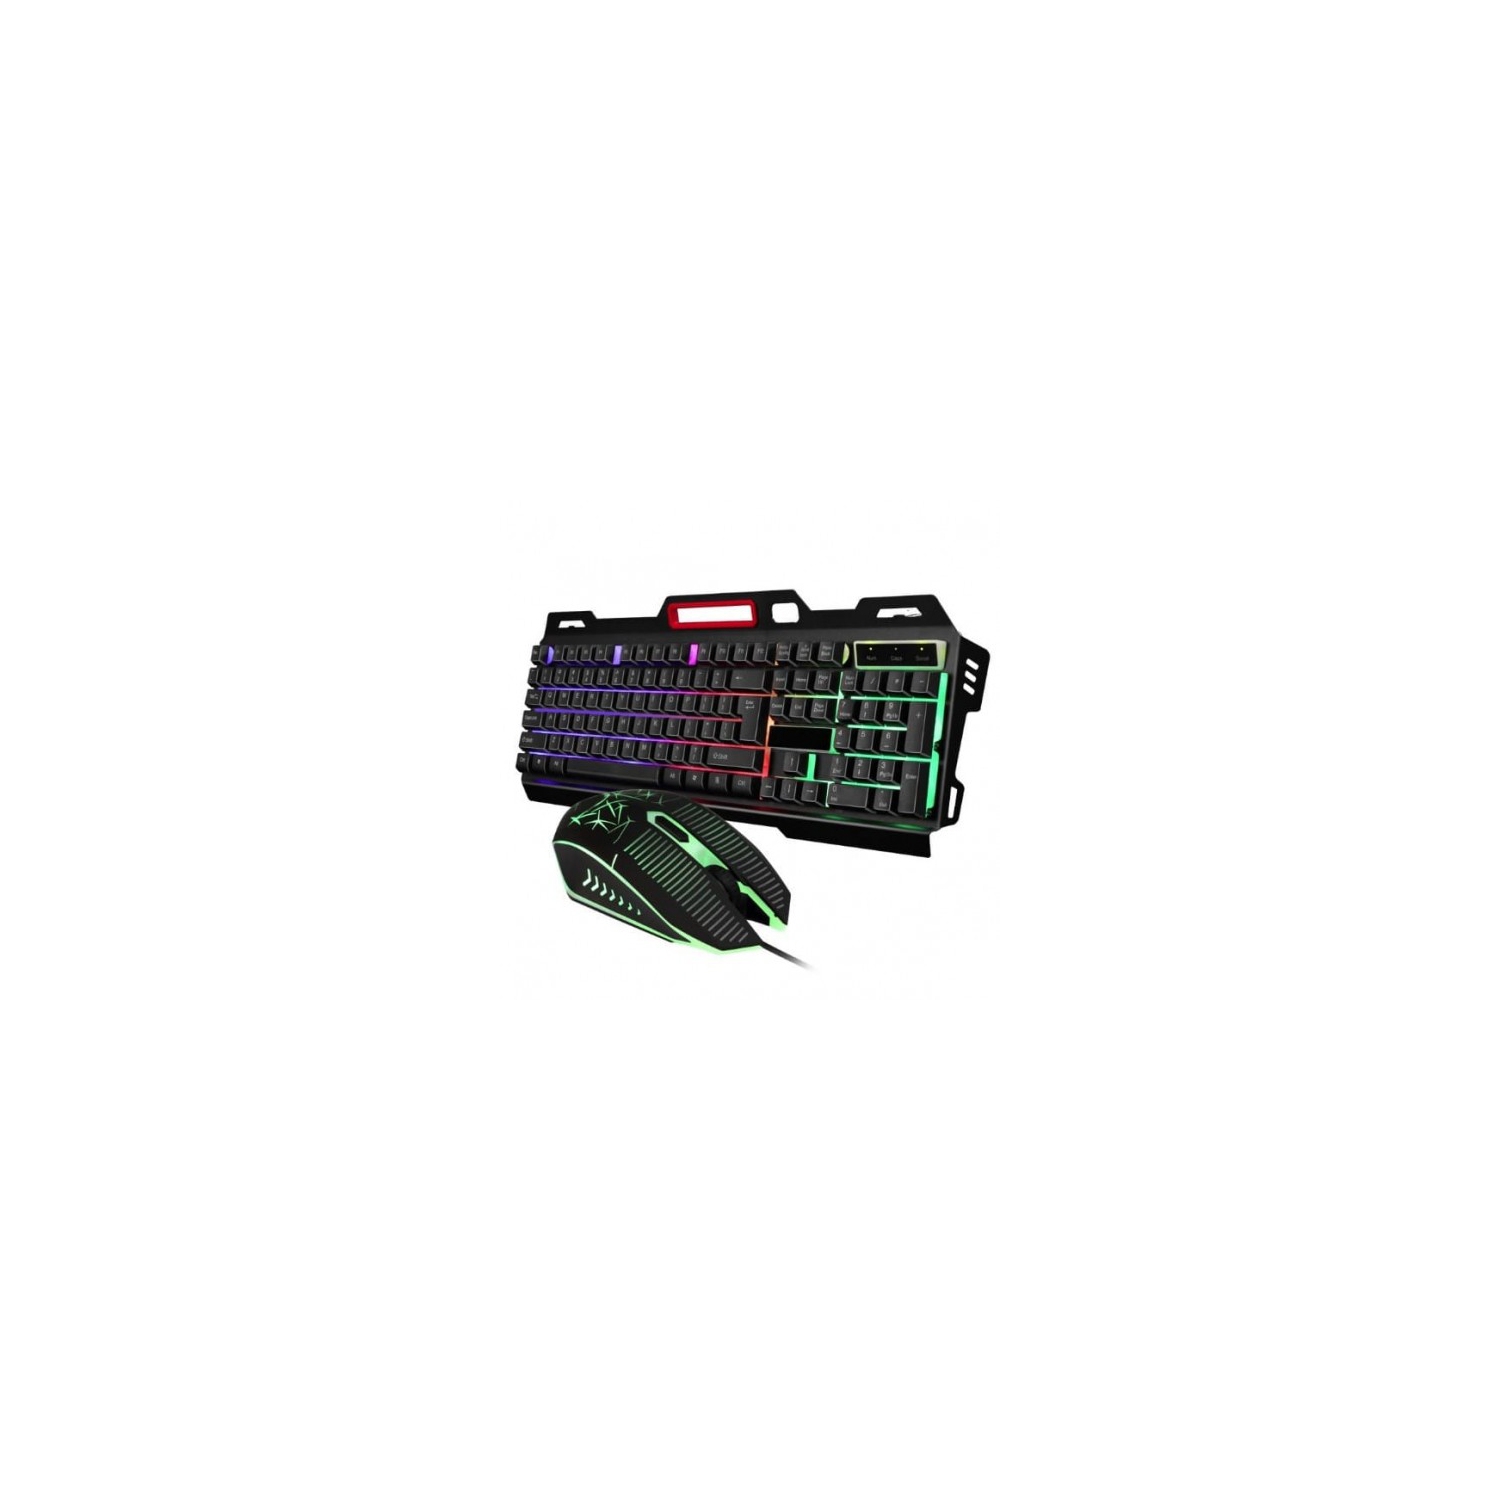 CMK198 Professional 104-Key Gaming Keyboard and Mouse Combo - USB - Rainbow LED Backlit